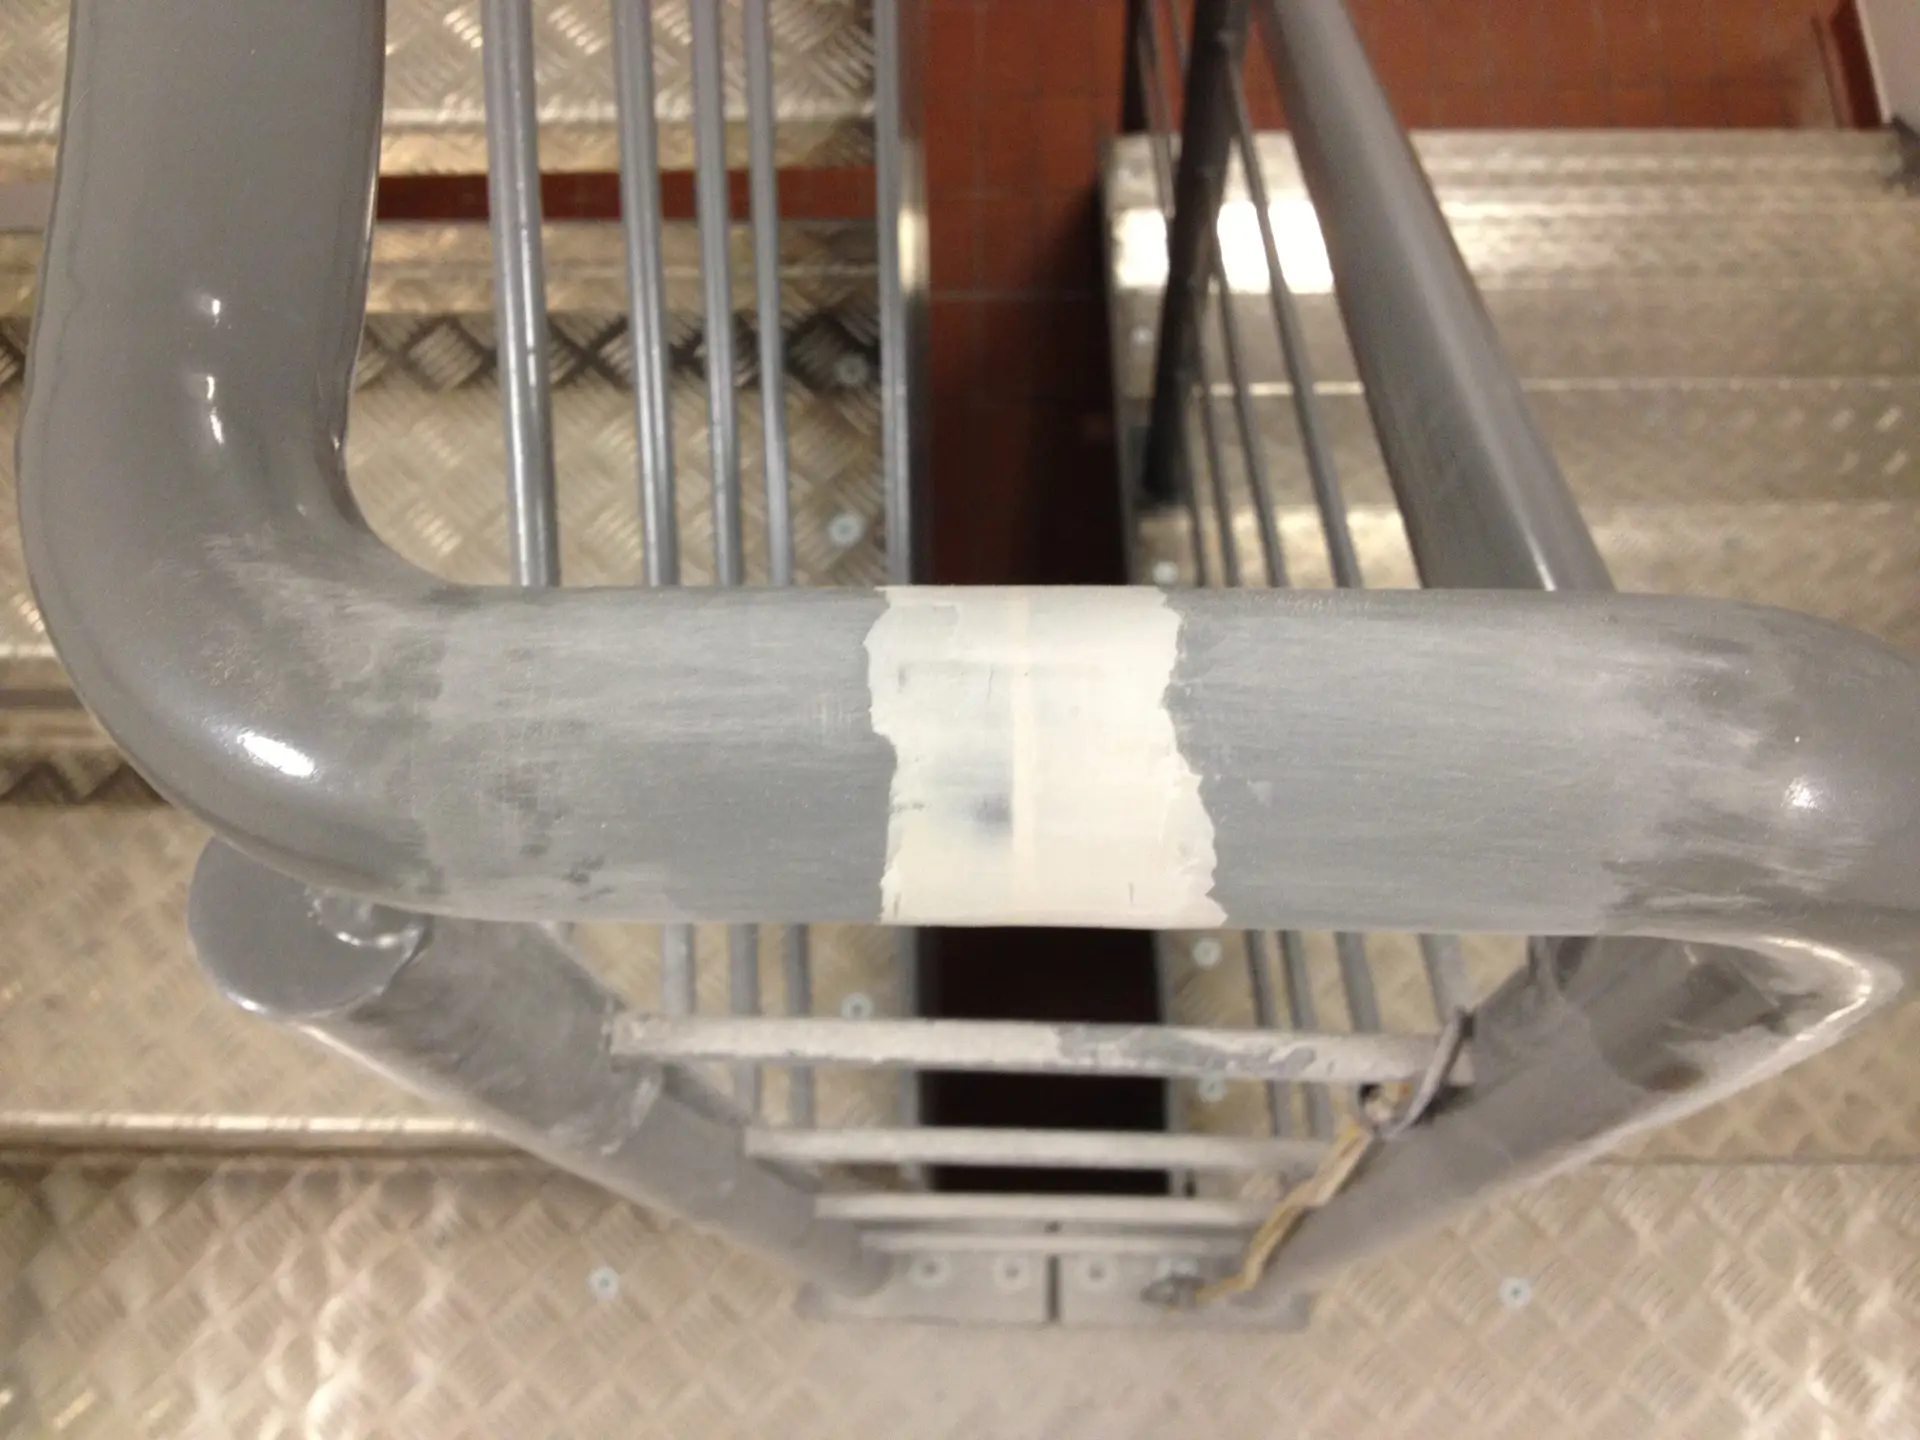 Metal handrail before being sprayed